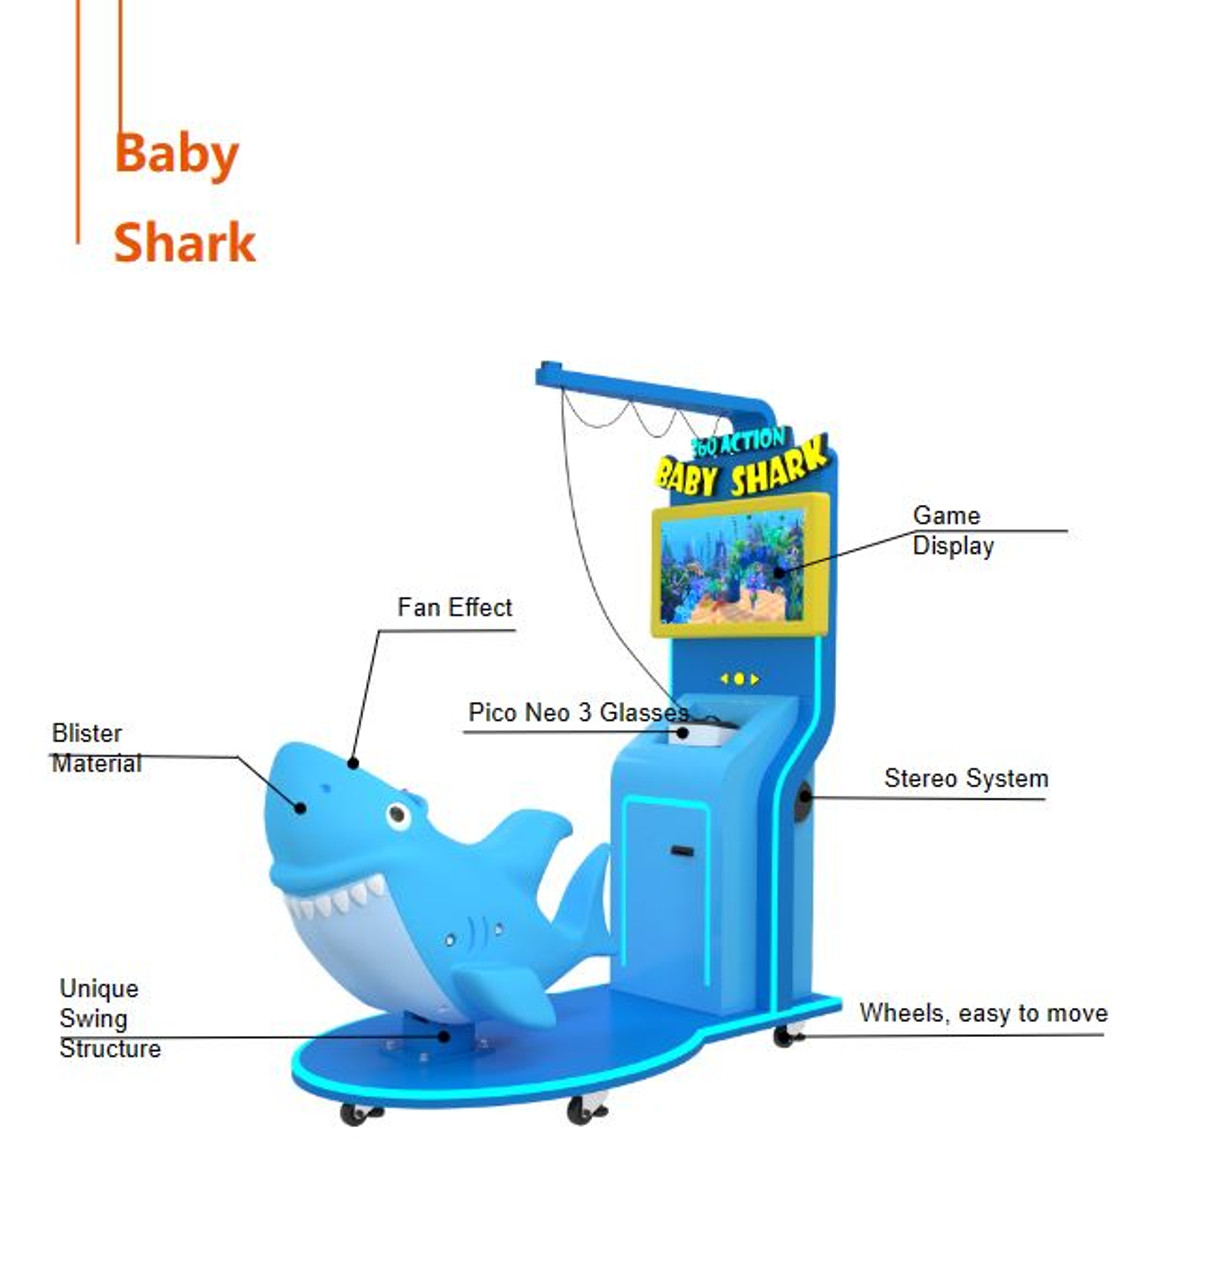 Baby Shark VR